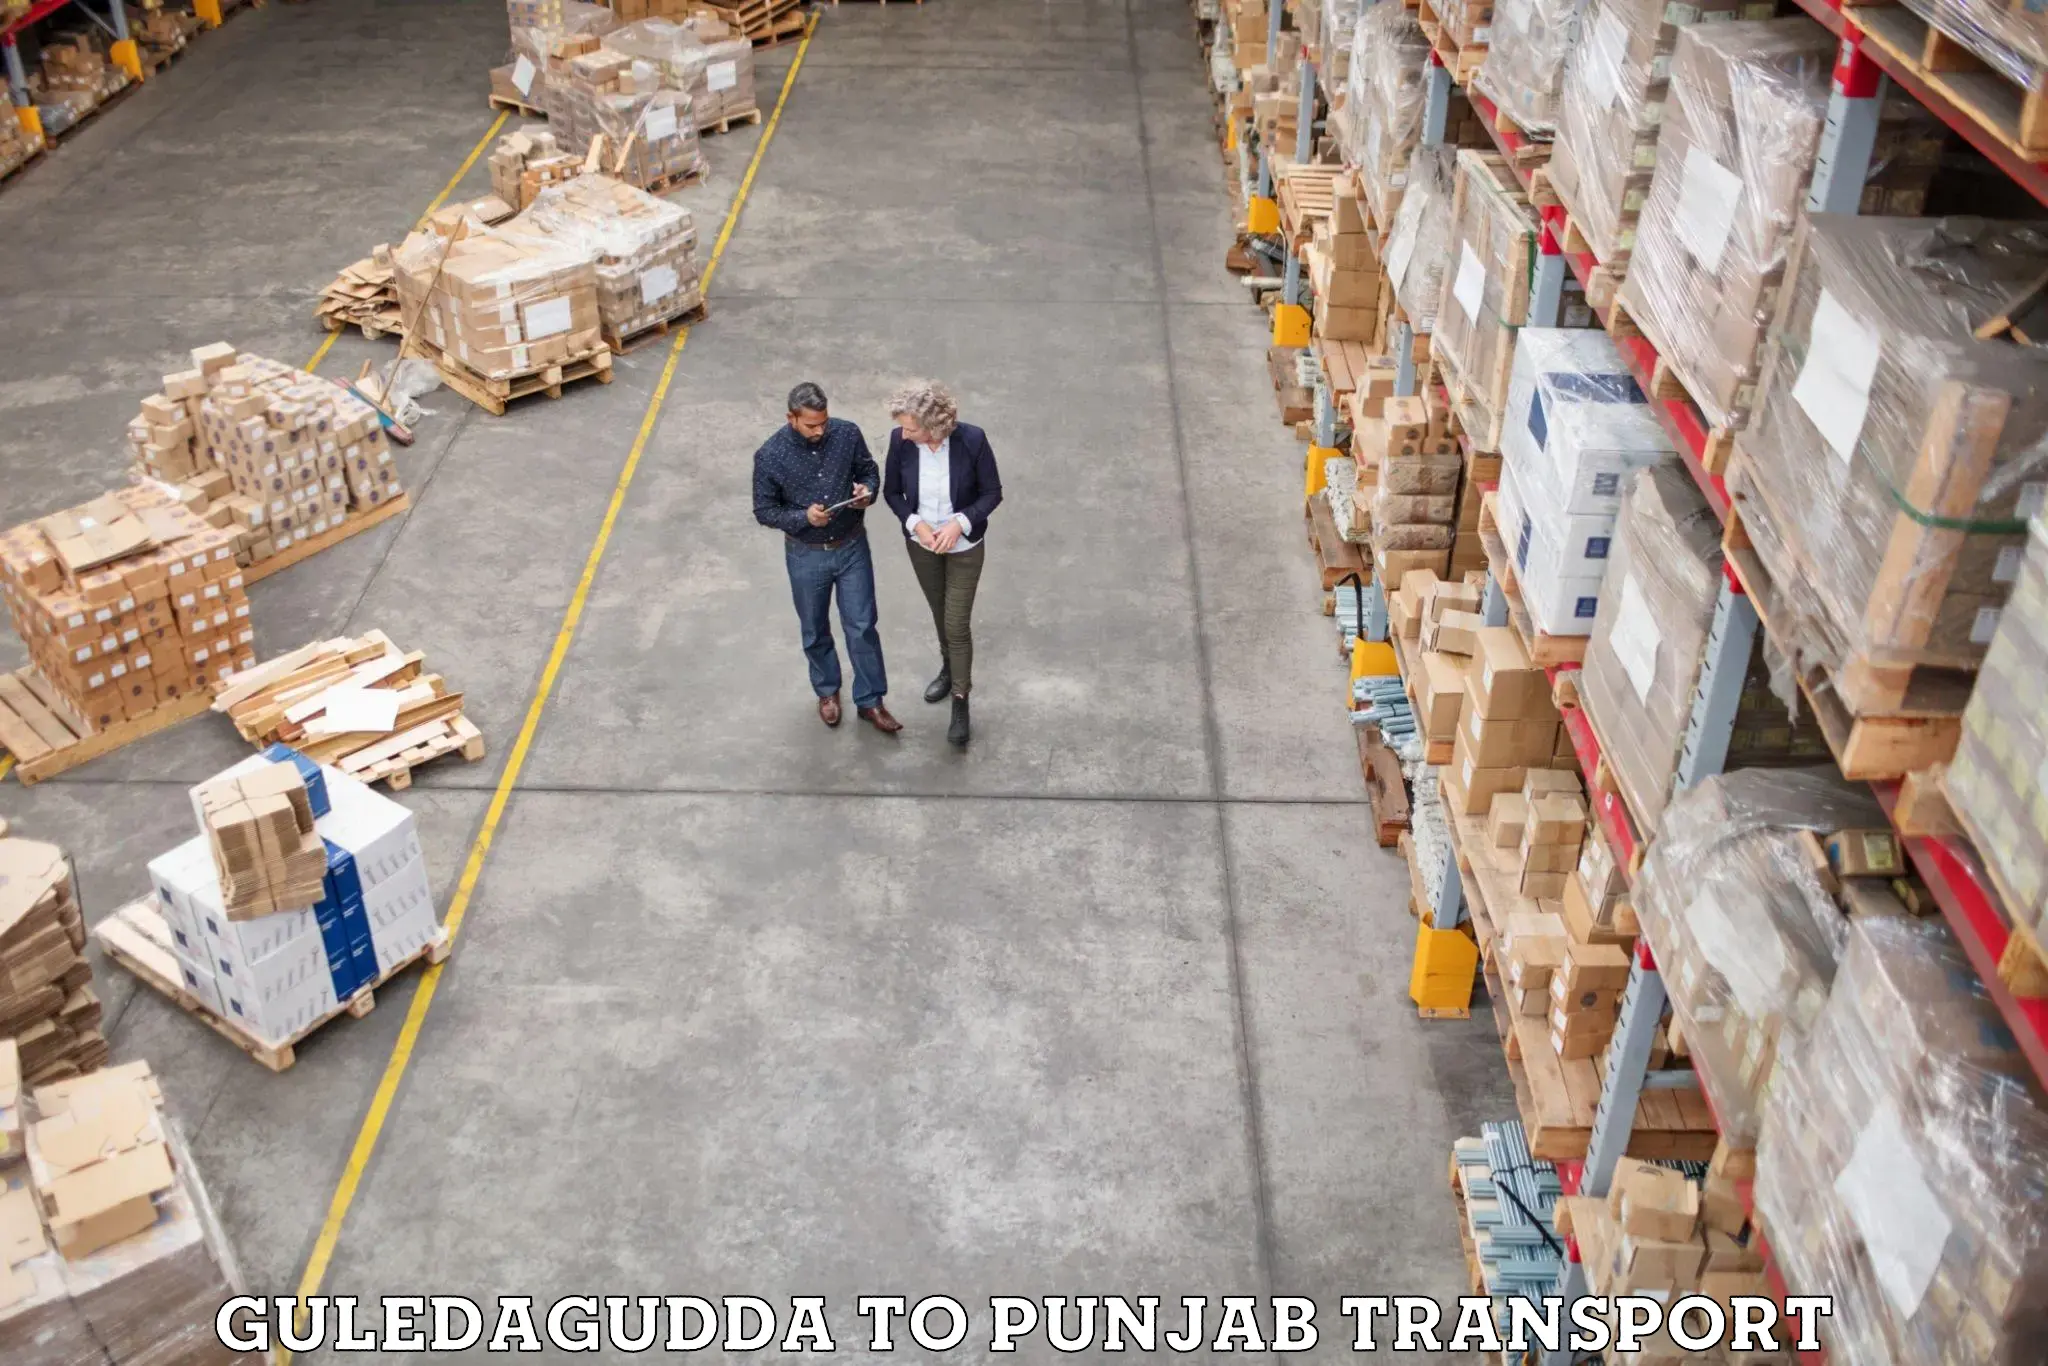 Vehicle parcel service Guledagudda to Dera Bassi